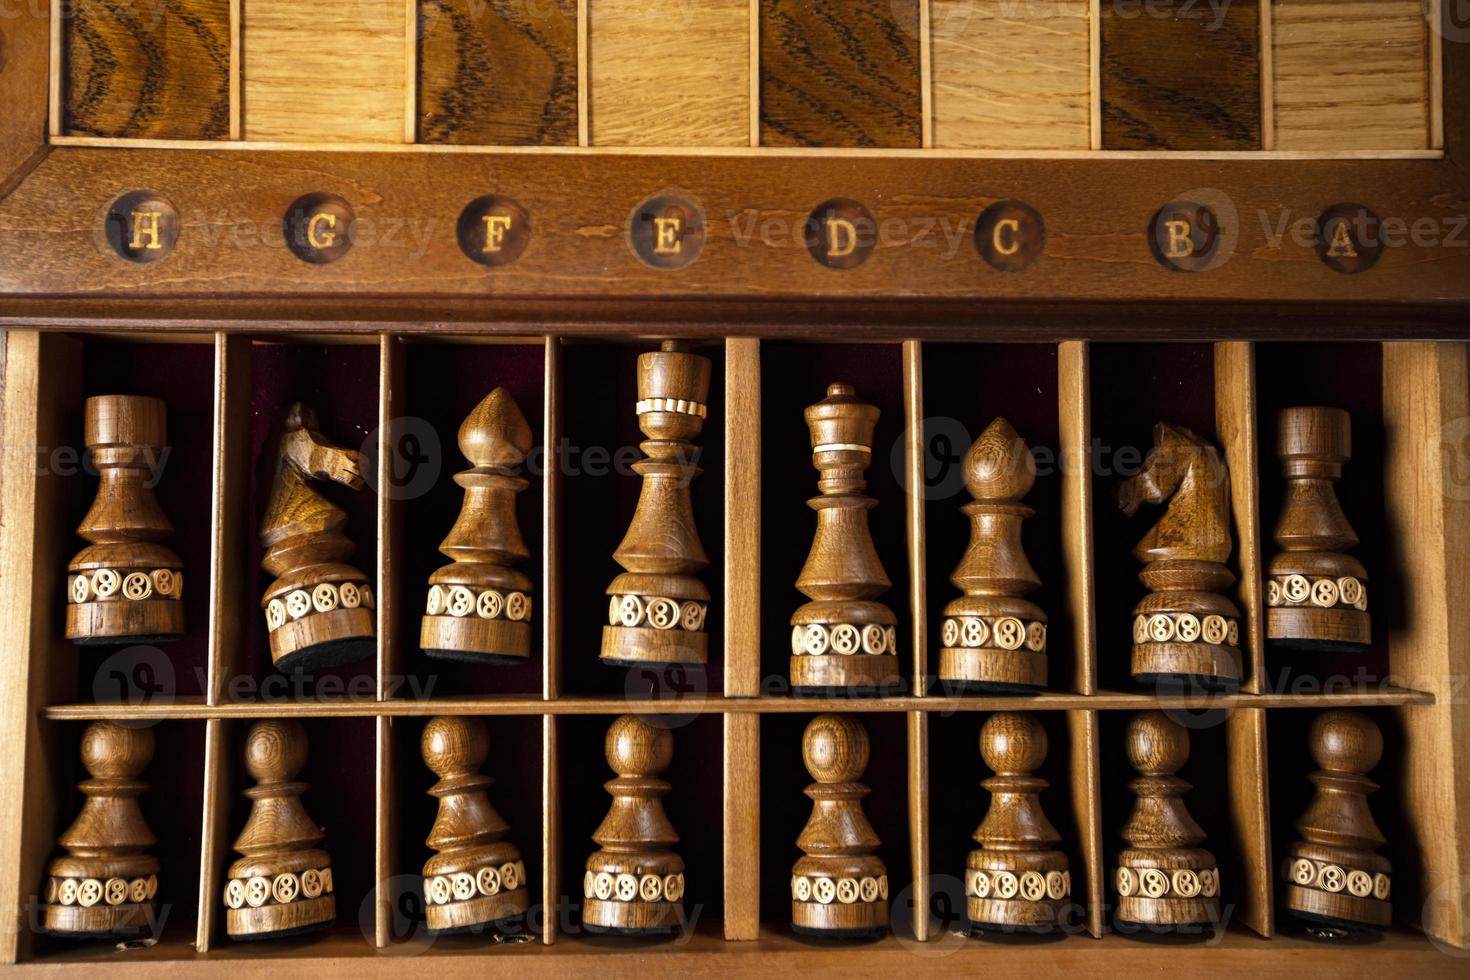 mörk schack bitar lögn i en låda. en pussel spel med knepig kombinationer den där kräver planera och tänkande. foto